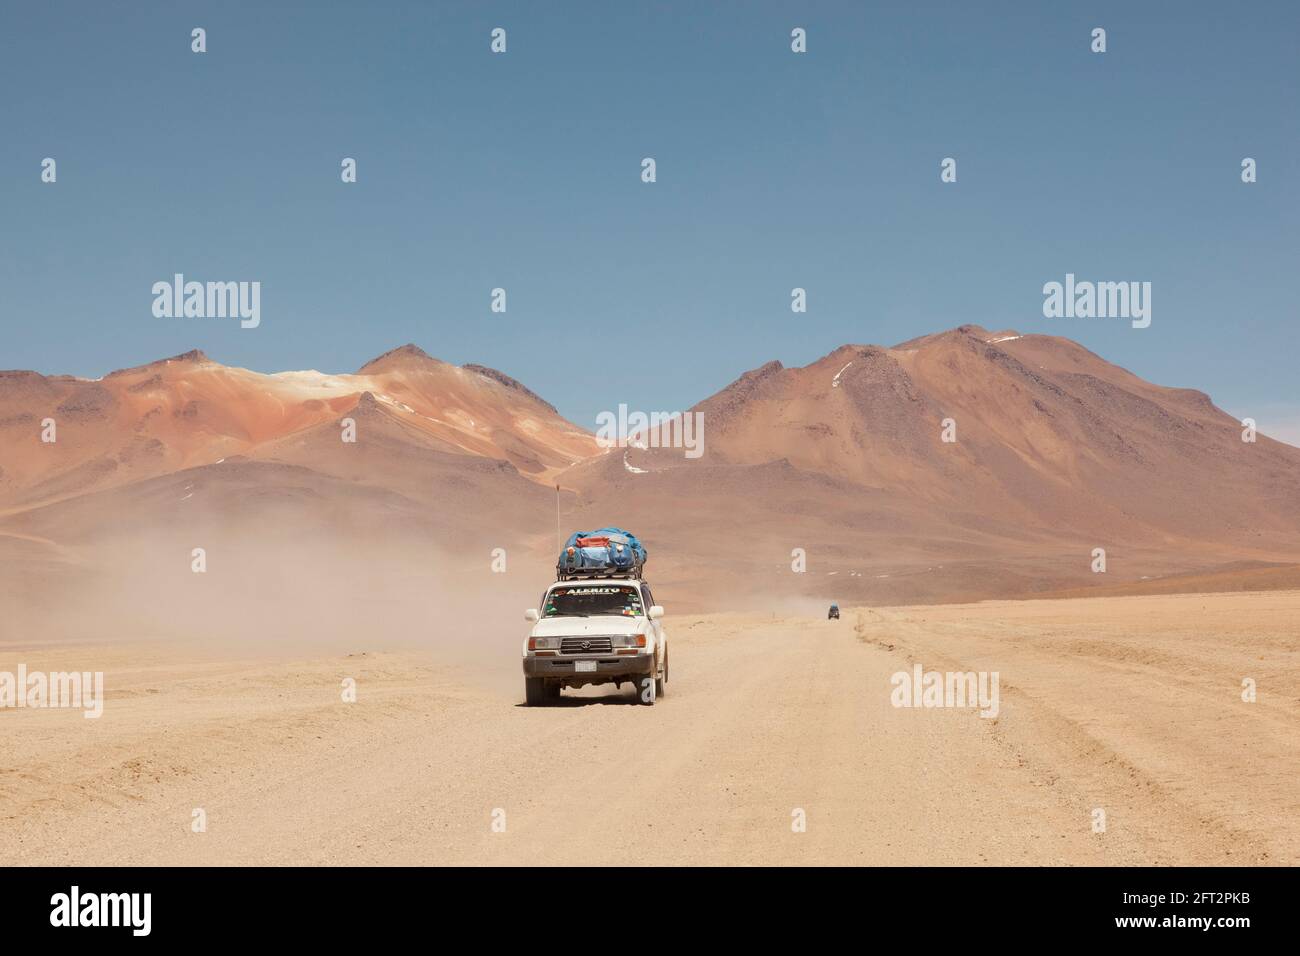 Vor dem Hintergrund von Vulkanen fährt ein Geländewagen im Geländewagen auf einer Touristensafari über Land durch die Wüstenlandschaft Boliviens. Stockfoto